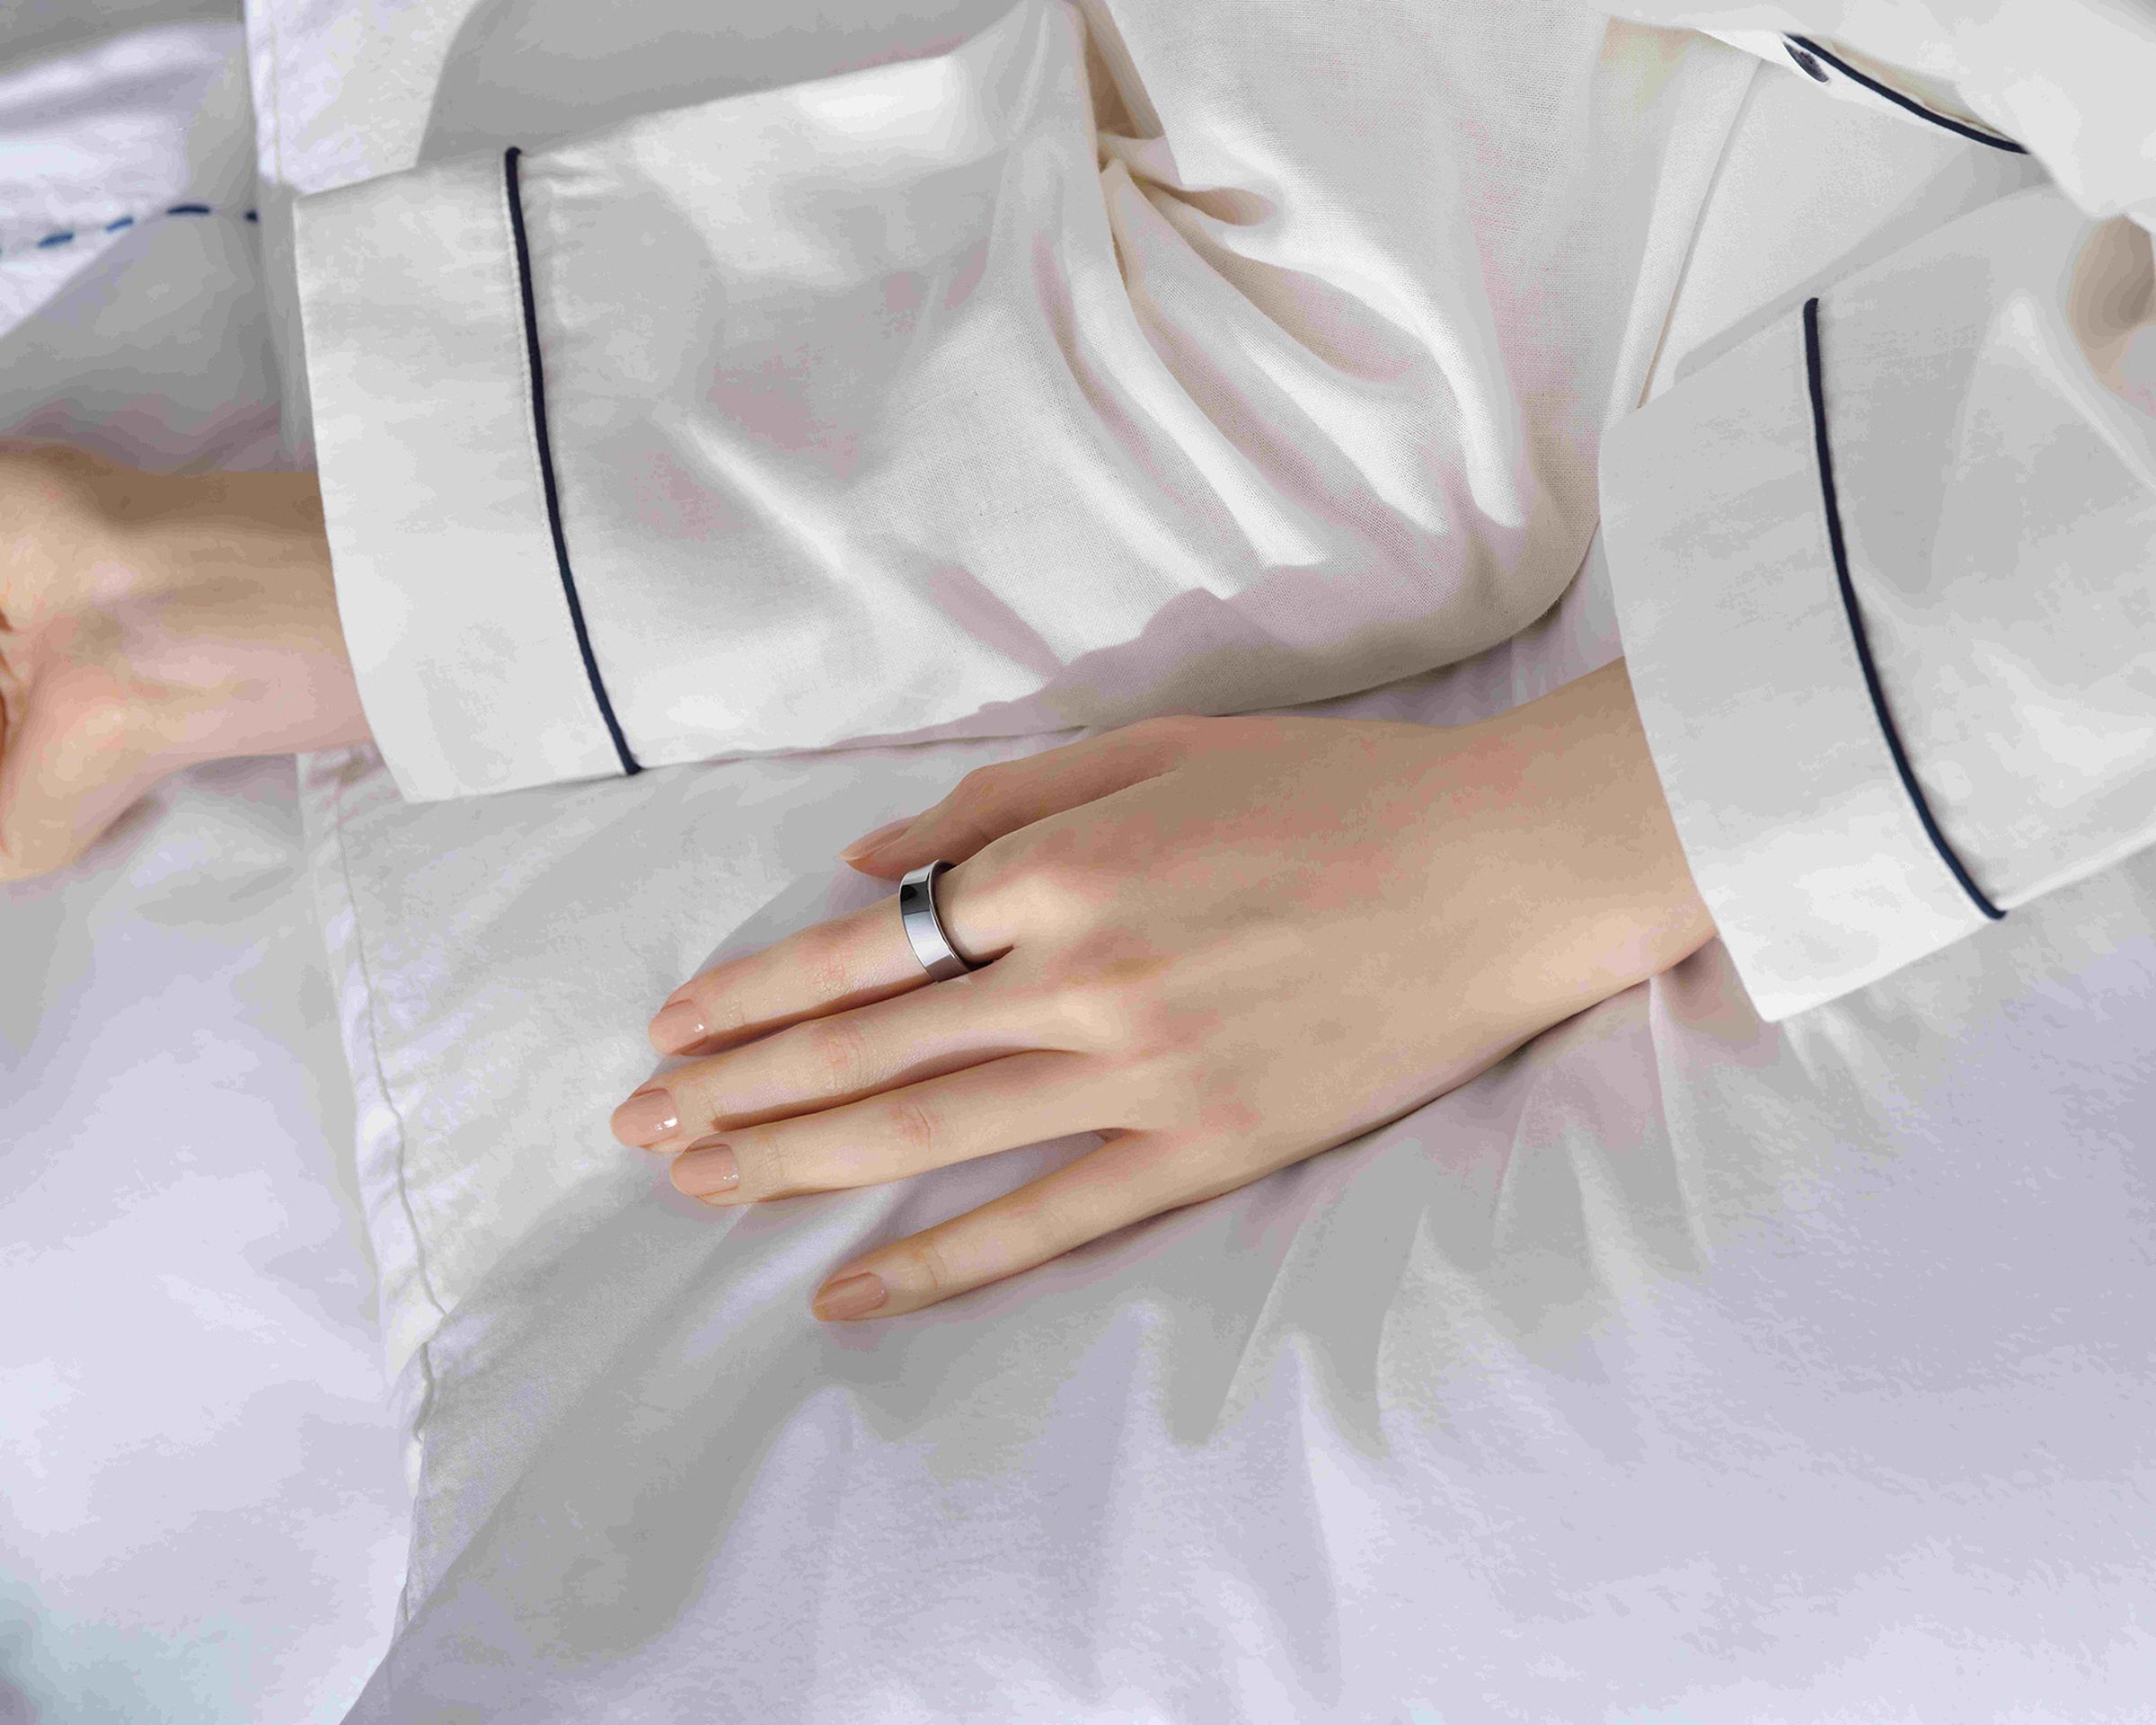 تصویر دست زن با حلقه گلکسی در حالی که فرد در رختخواب دراز کشیده است.